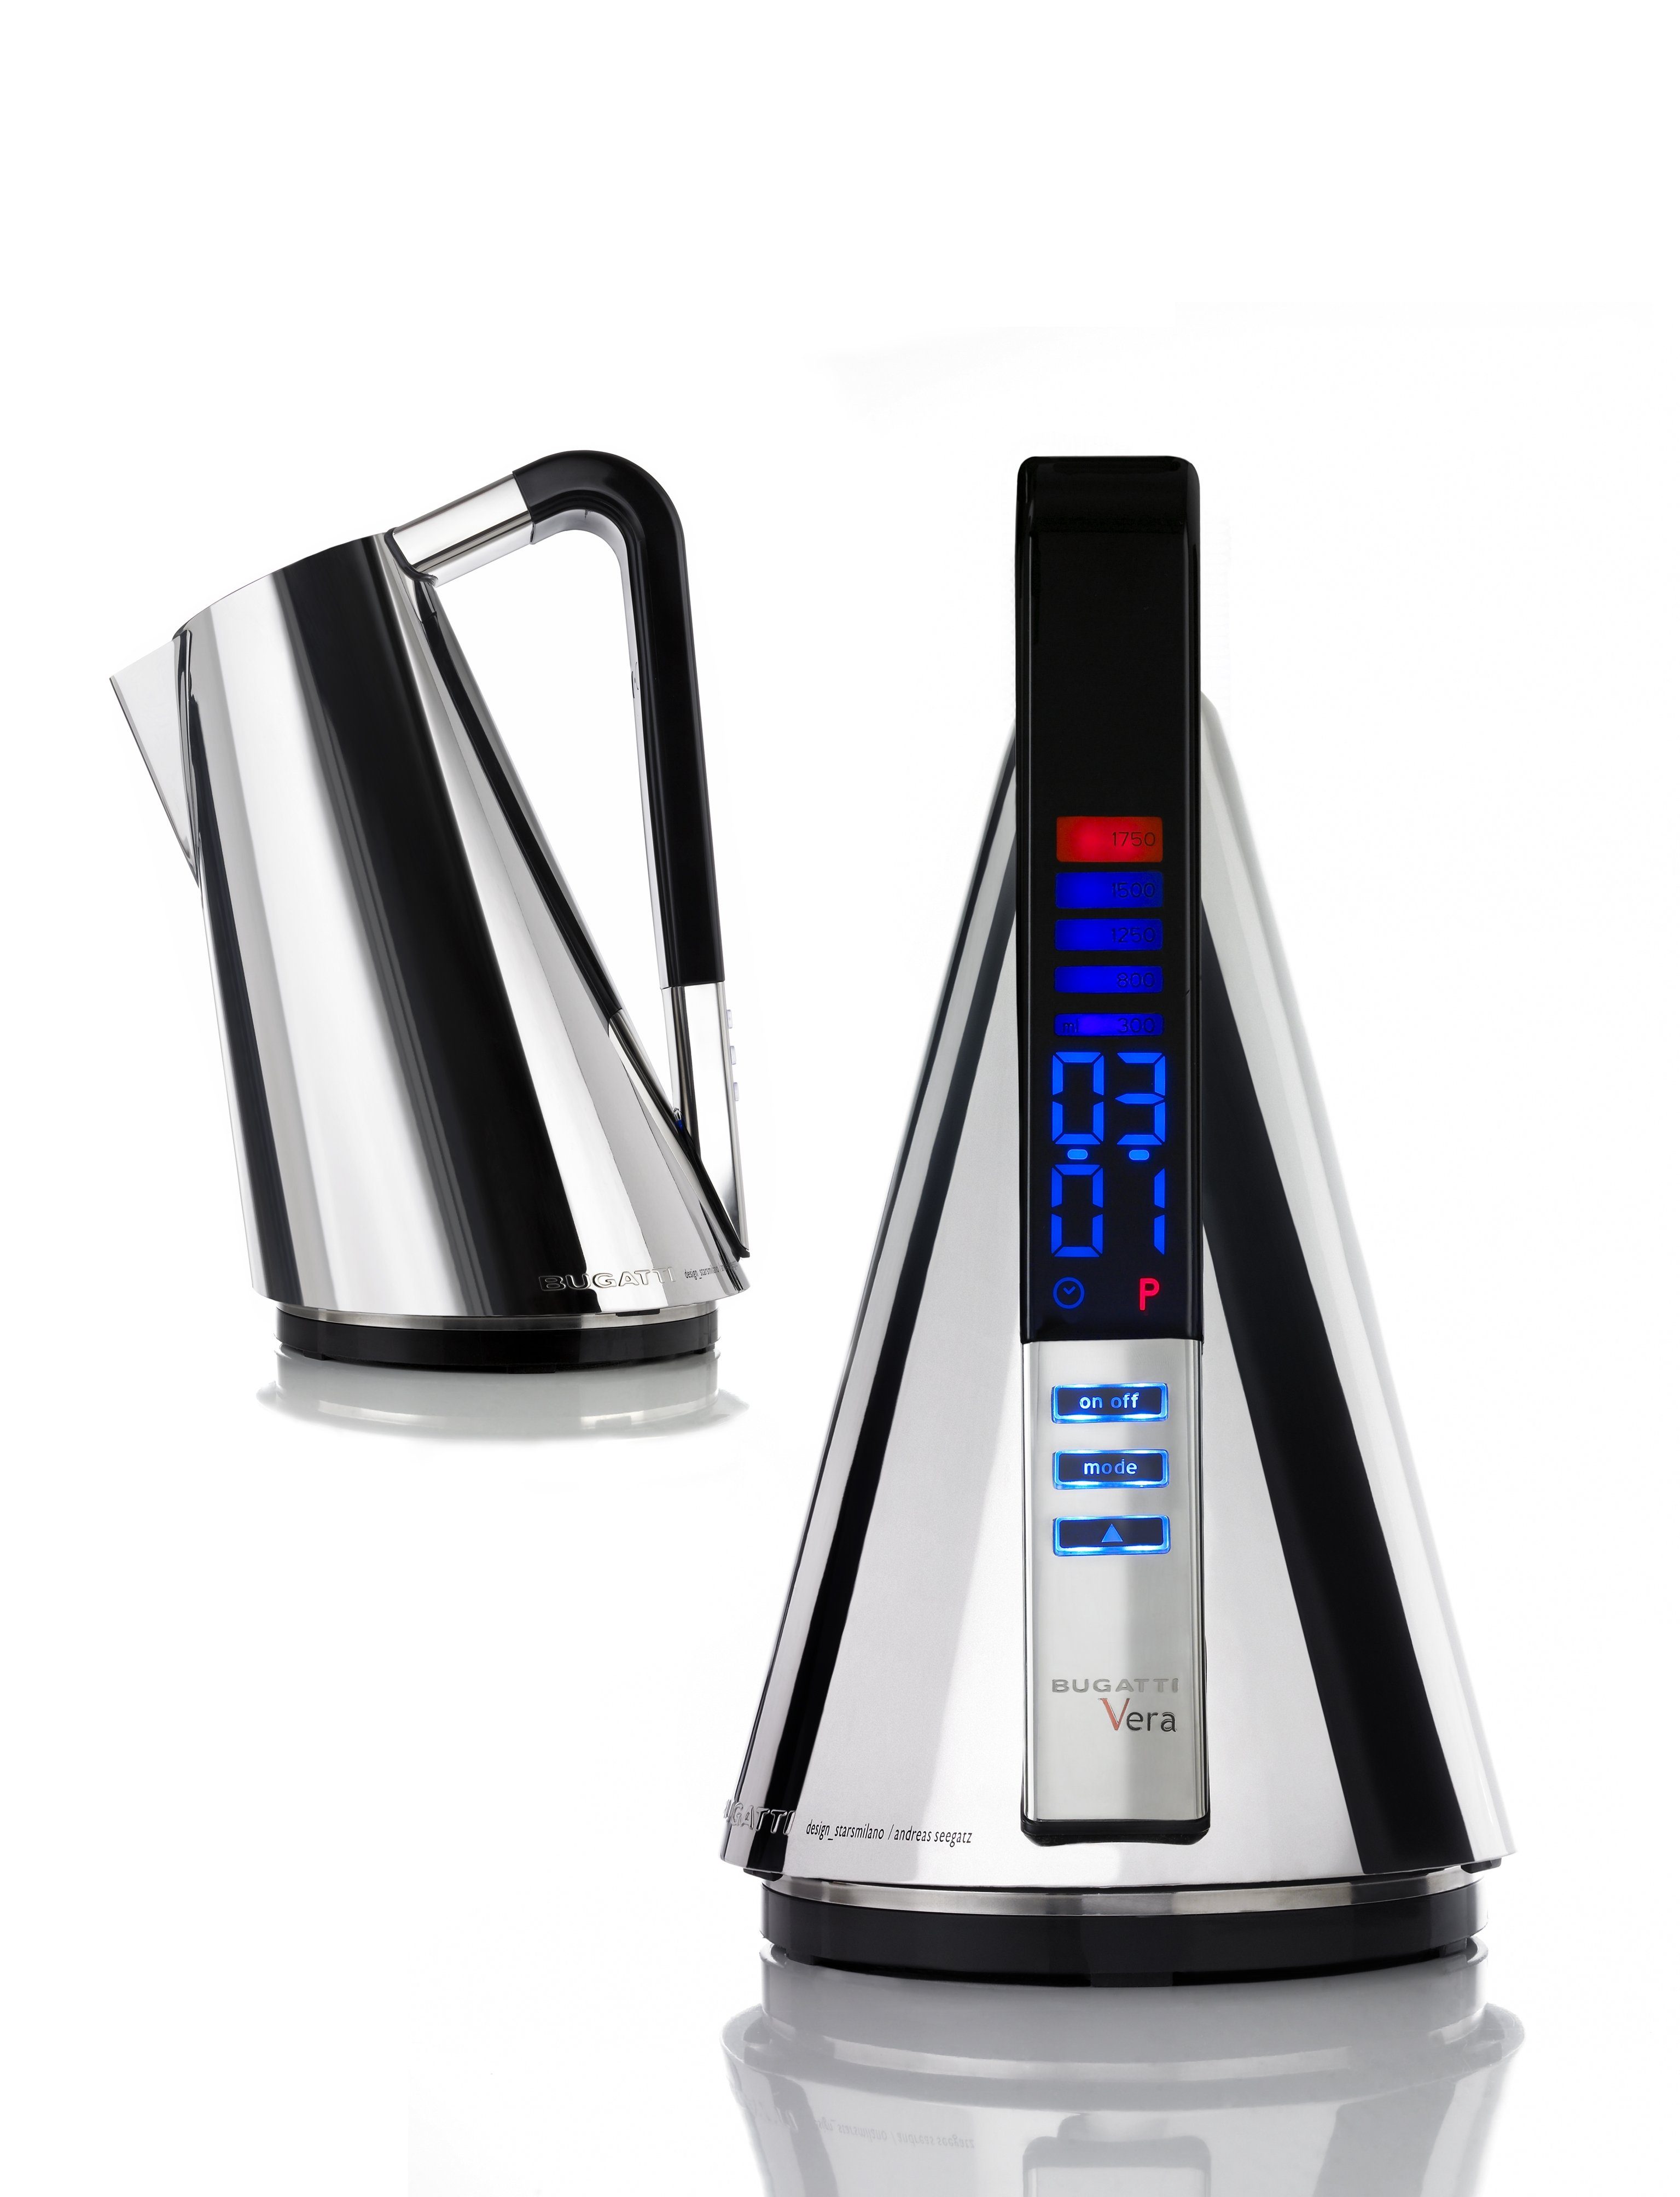 Casa Bugatti Wasserkocher und Wasserkocher Timer mit Temperaturregler Vera Chrom